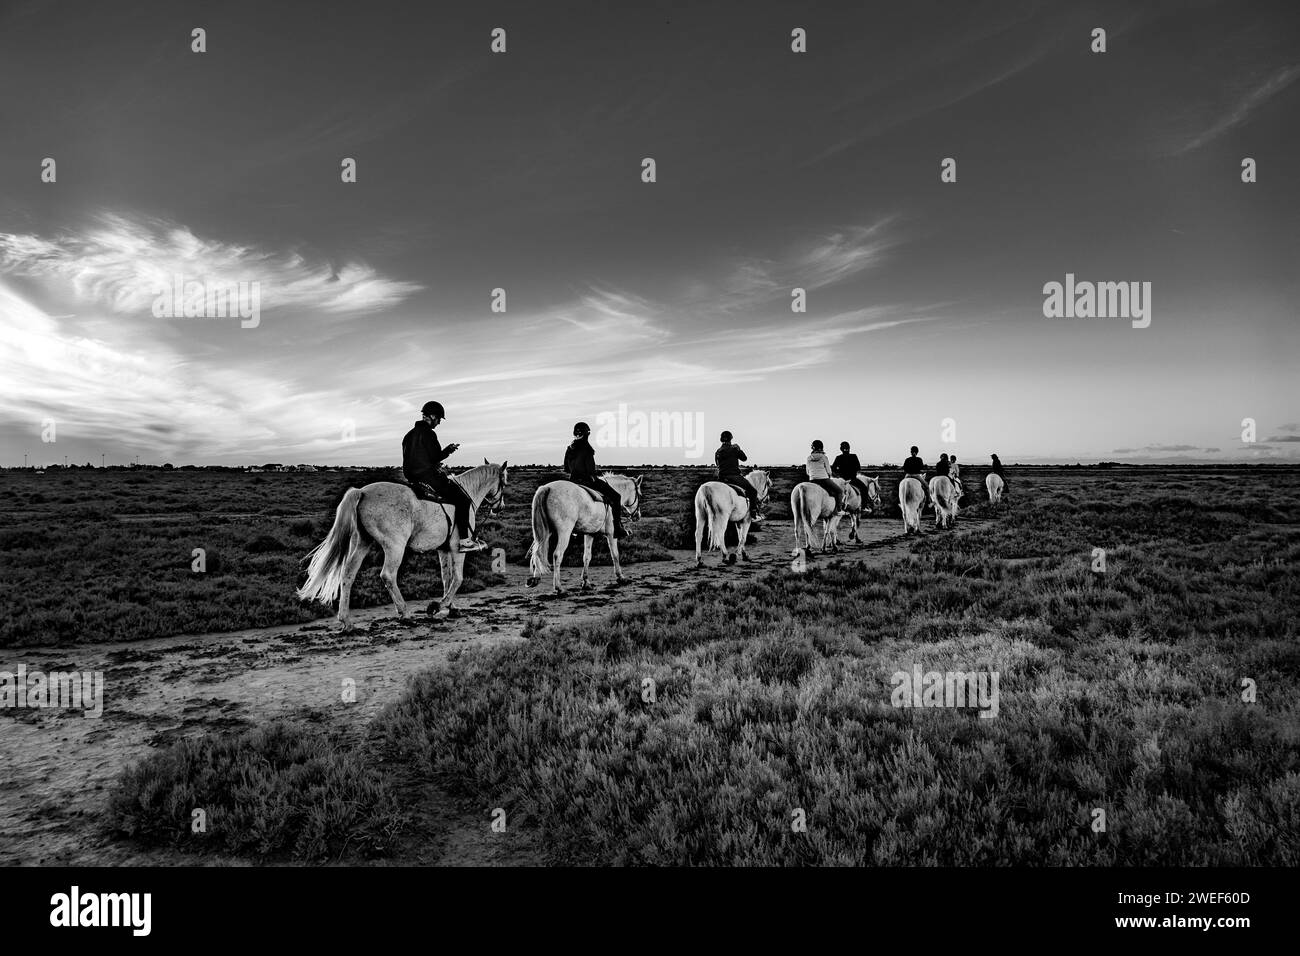 Un groupe de personnes à cheval le long d'un chemin poussiéreux dans une capture captivante en noir et blanc Banque D'Images